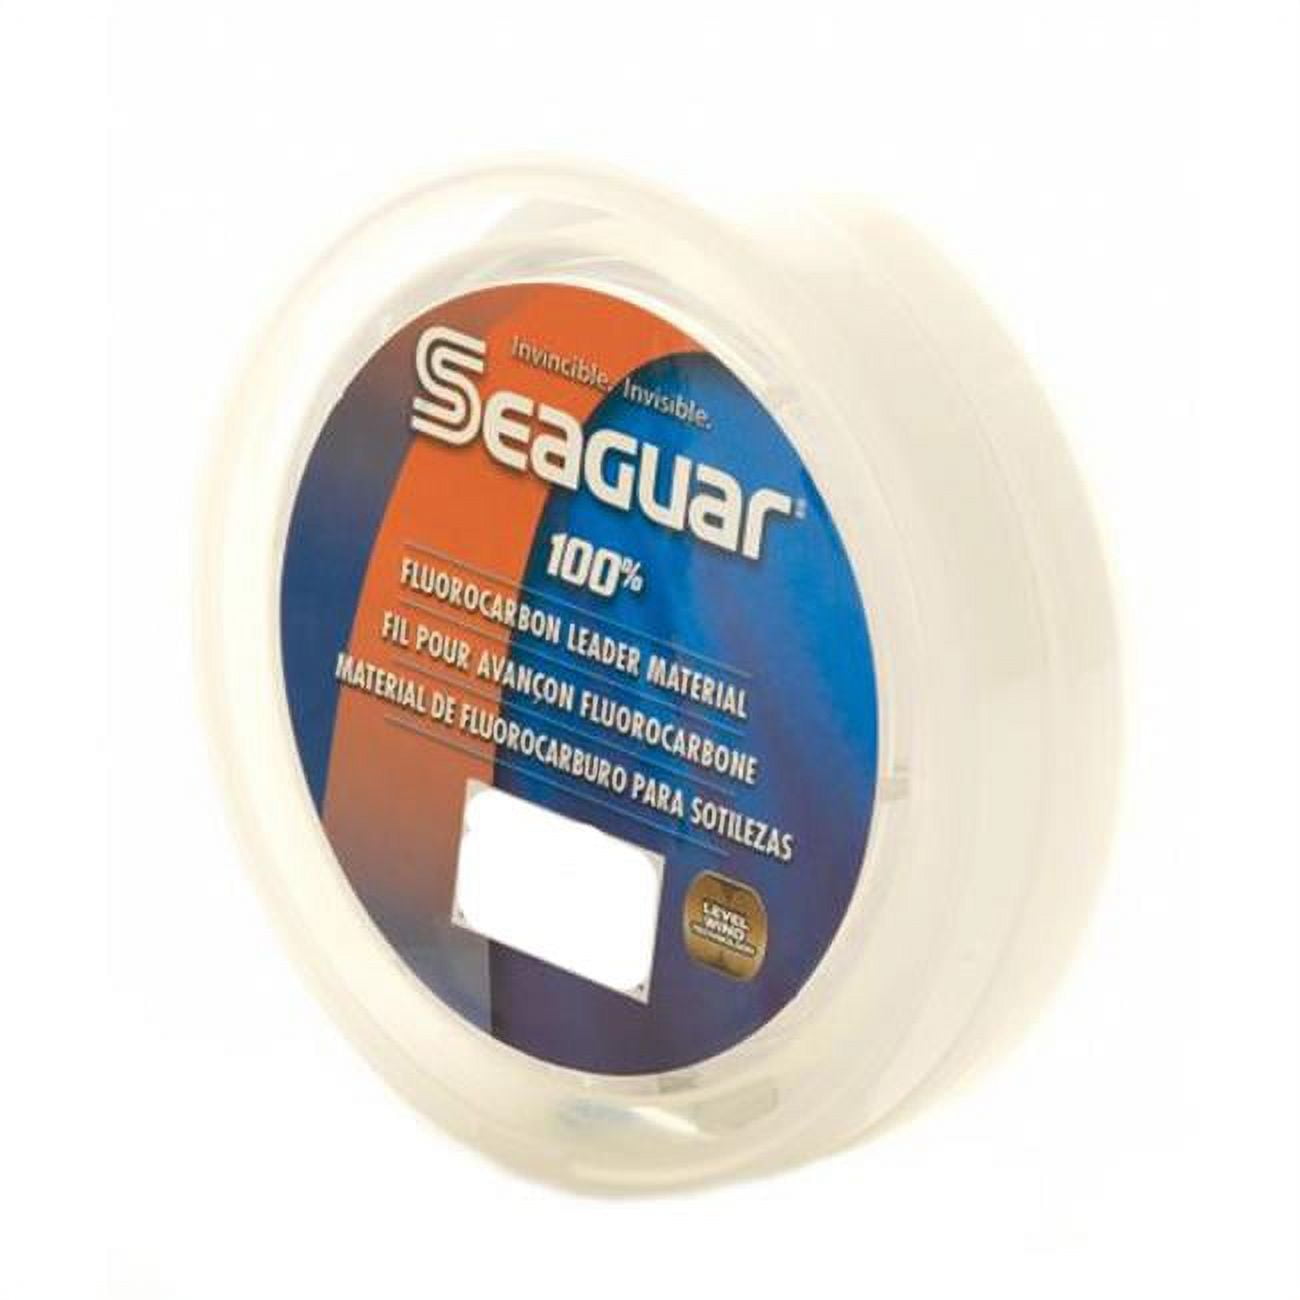 Seaguar Blue Label Fluorocarbon Leader 4 lb